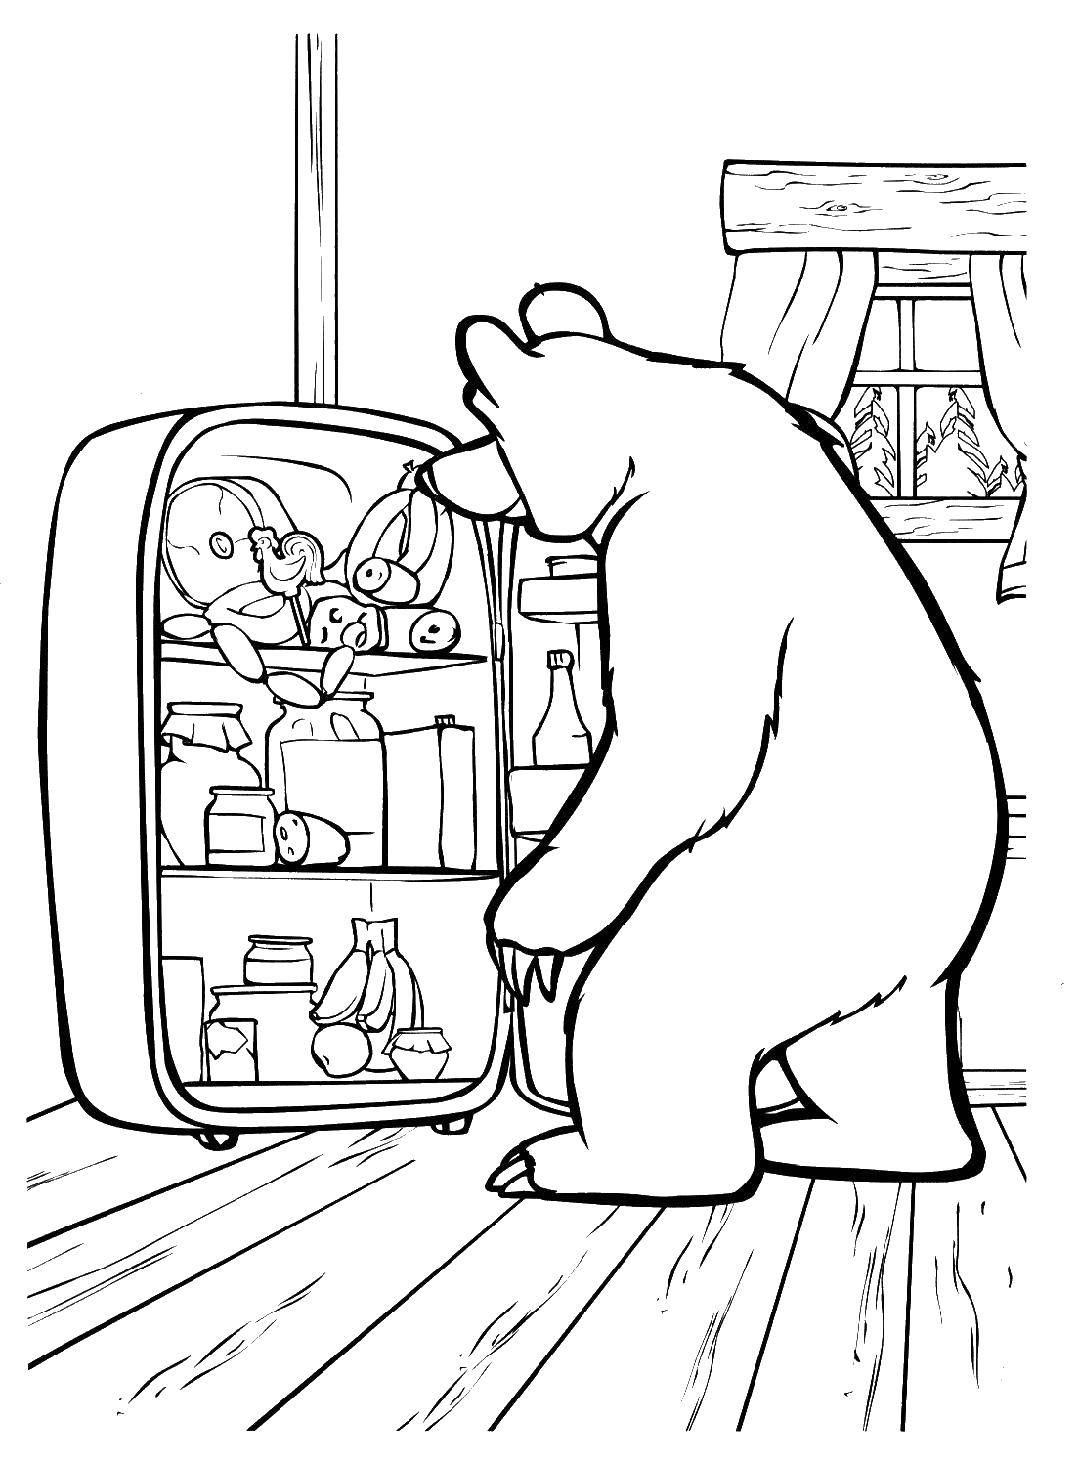 Раскраски для детей про озорную Машу из мультфильма Маша и медведь  Медведь заглядывает в холодильник